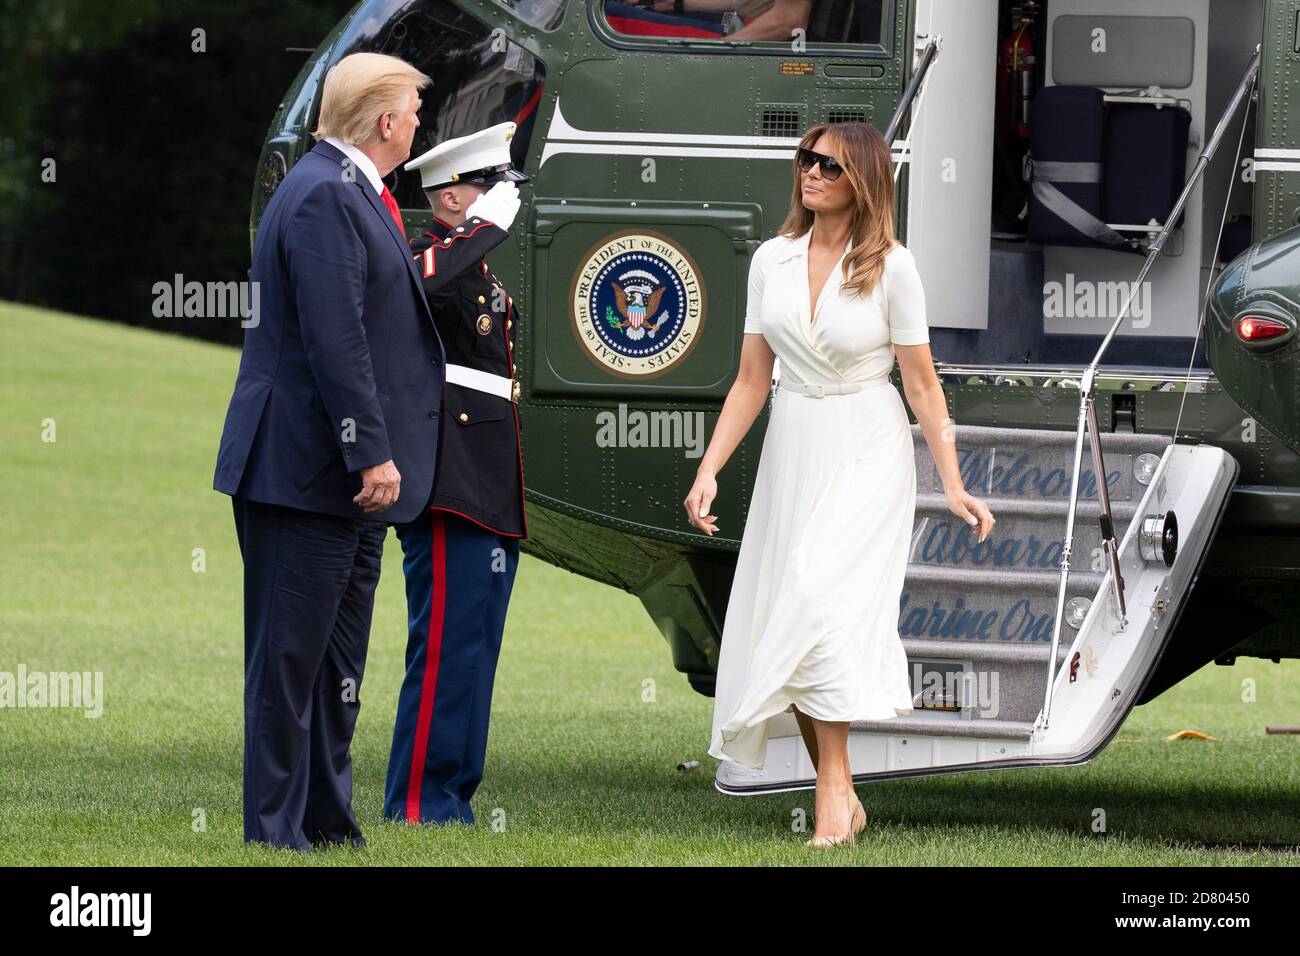 LE président AMÉRICAIN Donald Trump et la première dame Melania Trump arrivent à la Maison Blanche à bord de Marine One après un voyage d'un week-end à Bedminster, New Jersey, le 7 juillet 2019 à Washington, DC. Crédit : Alex Edelman/l'accès photo Banque D'Images